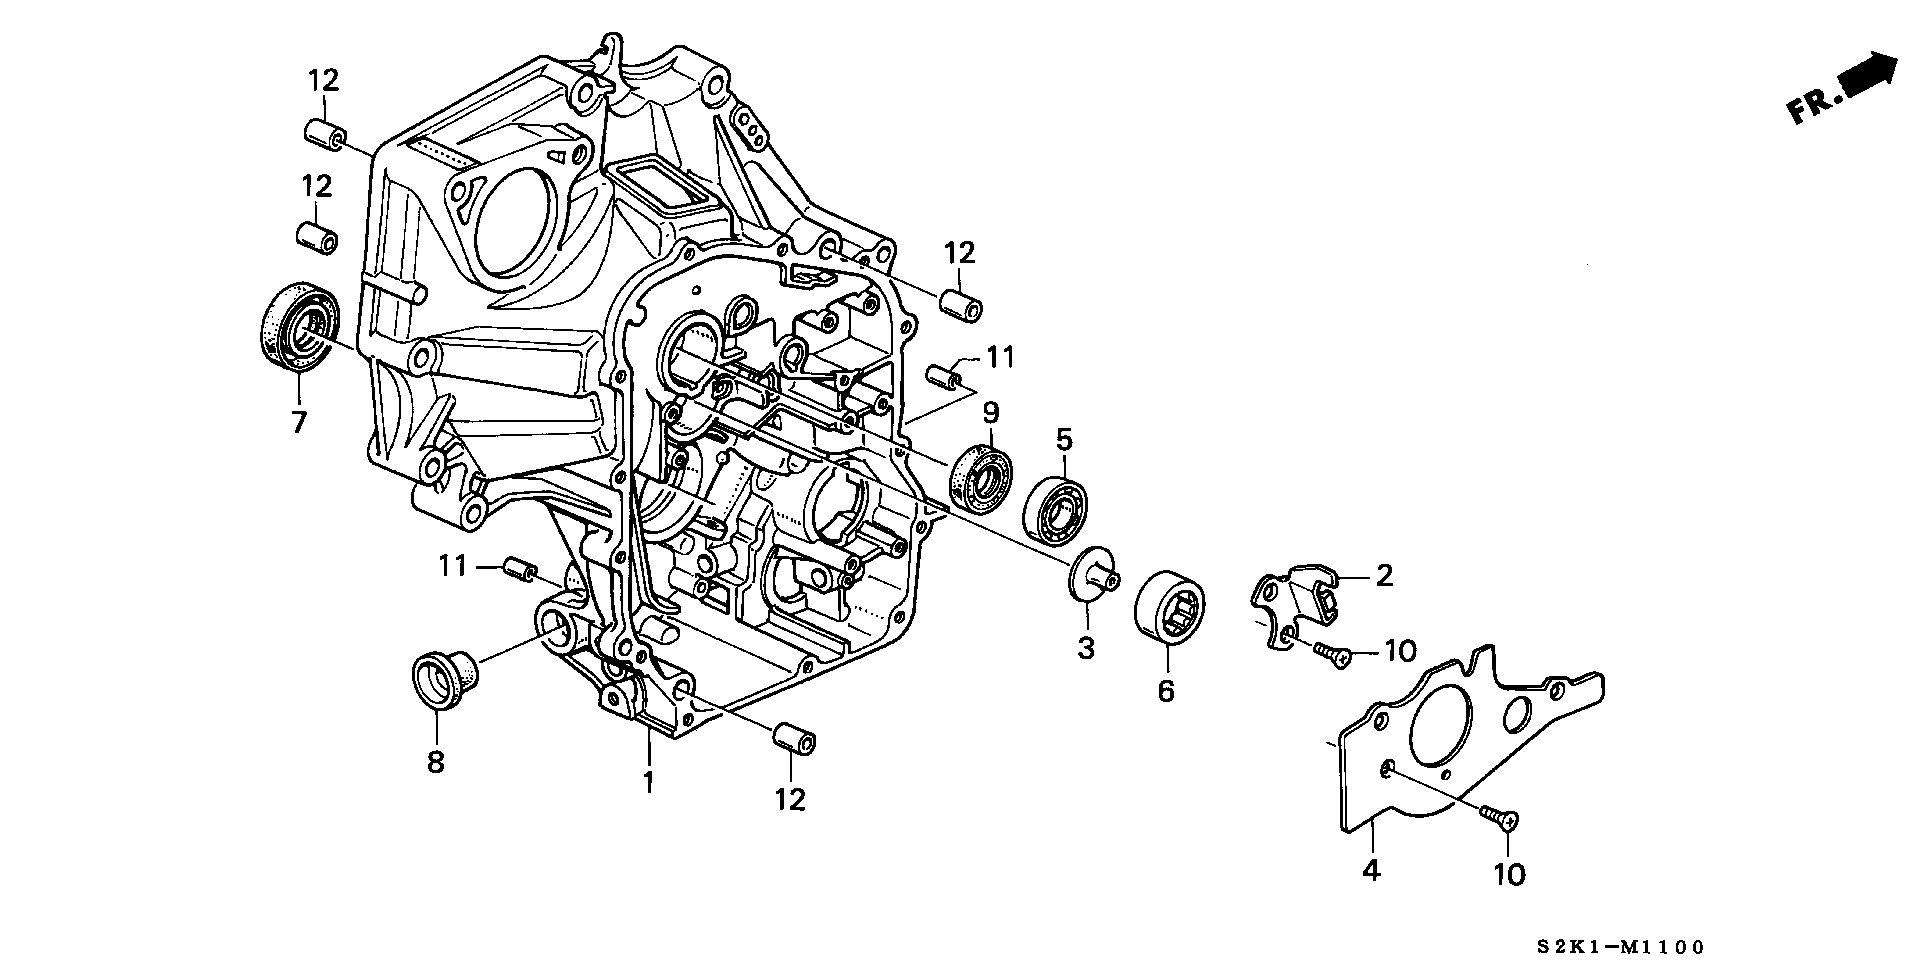 CLUTCH CASE(4WD)